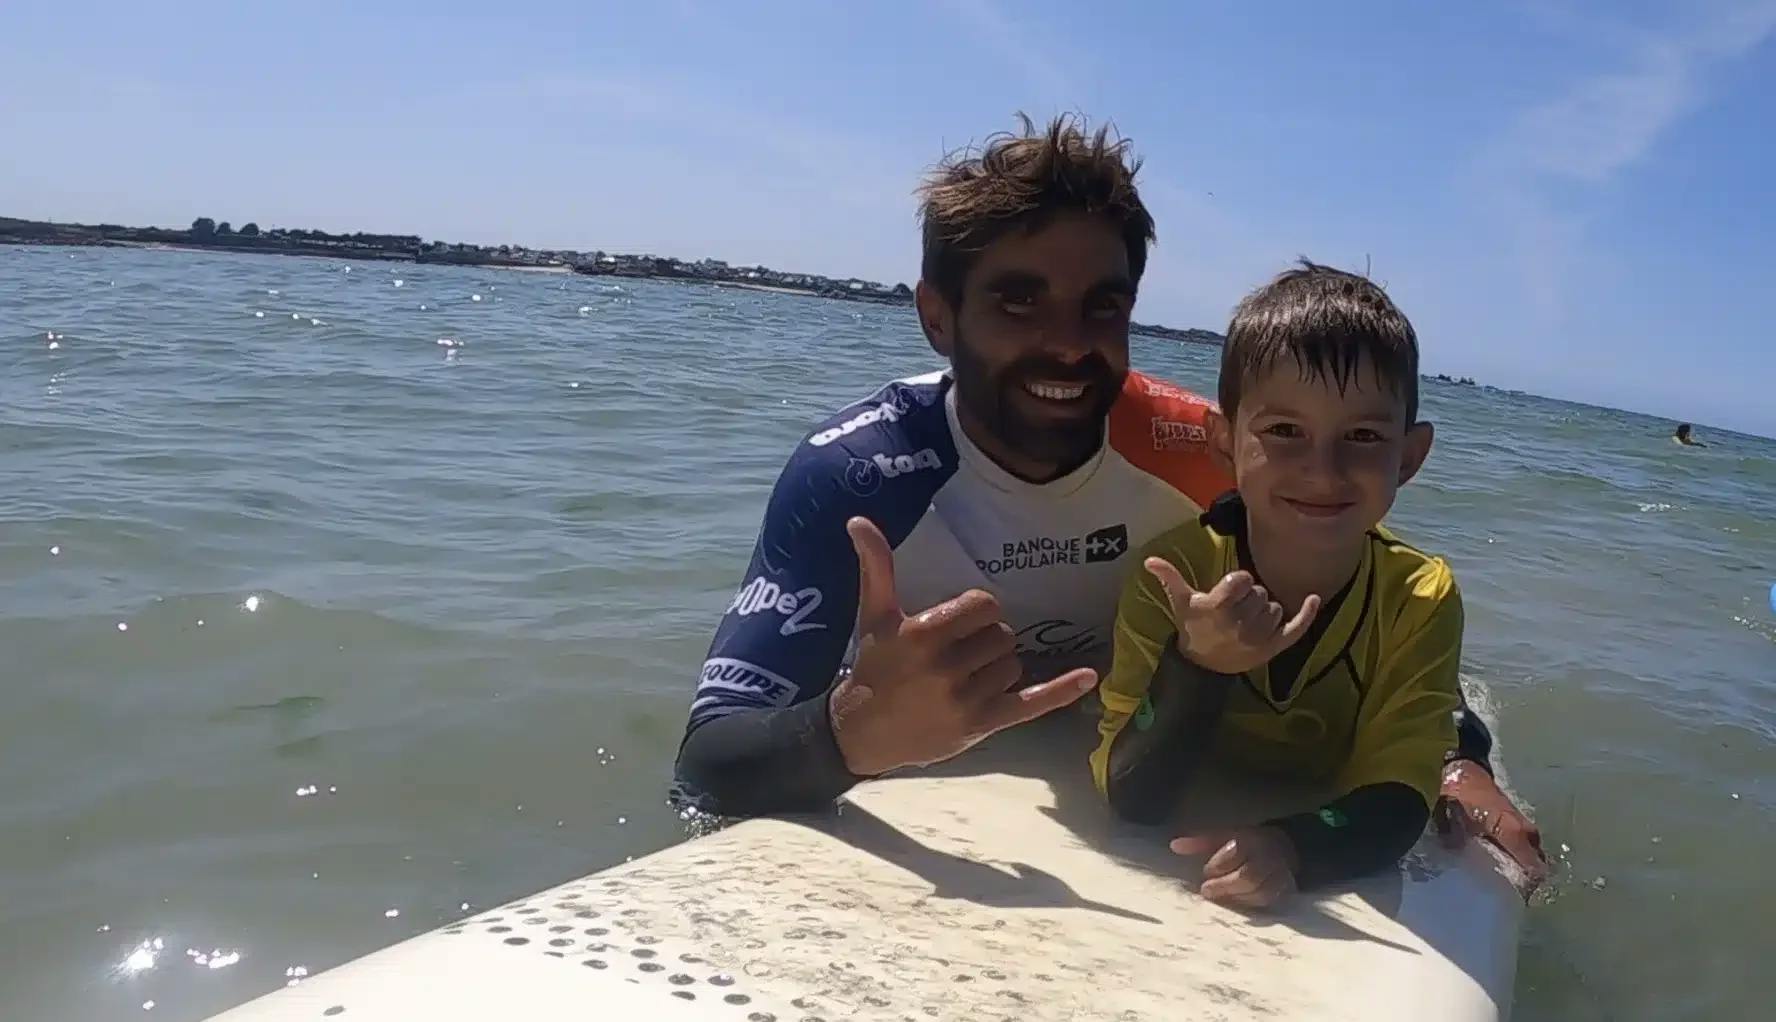 Raf, moniteur de la Dossen Surf School, donne un cours à un jeune garçon